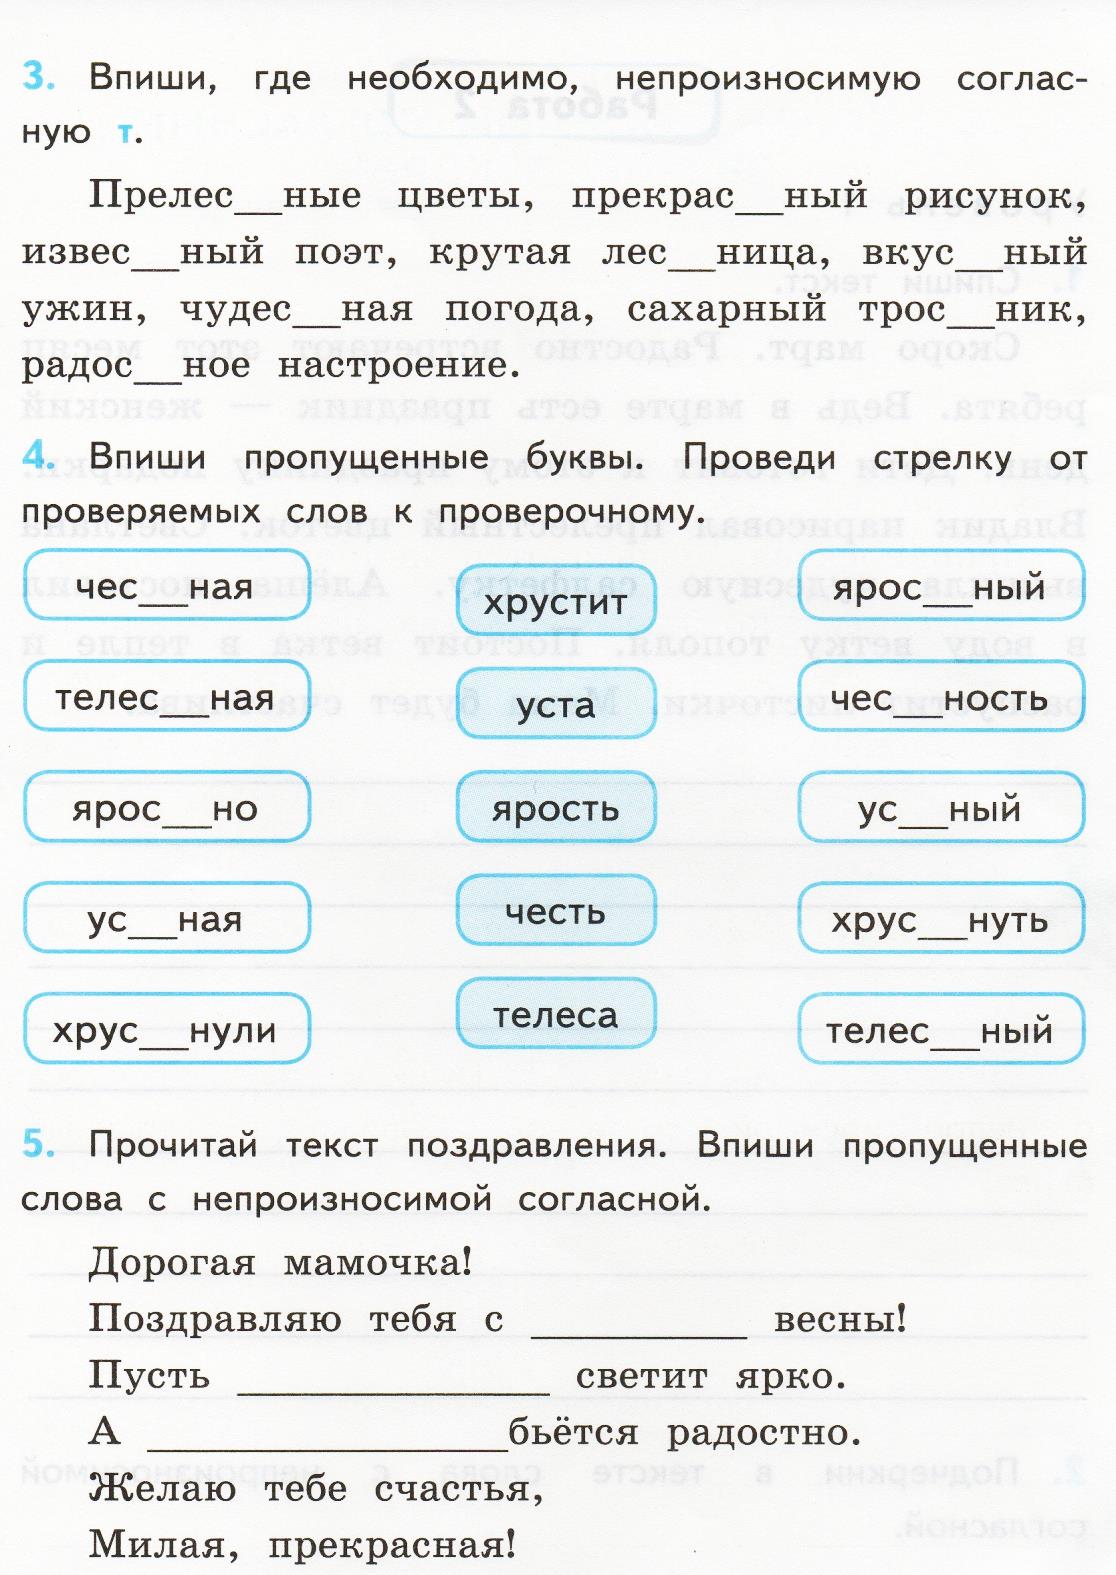 Рабочая программа по русскому языку. 3 класс. Система Занкова